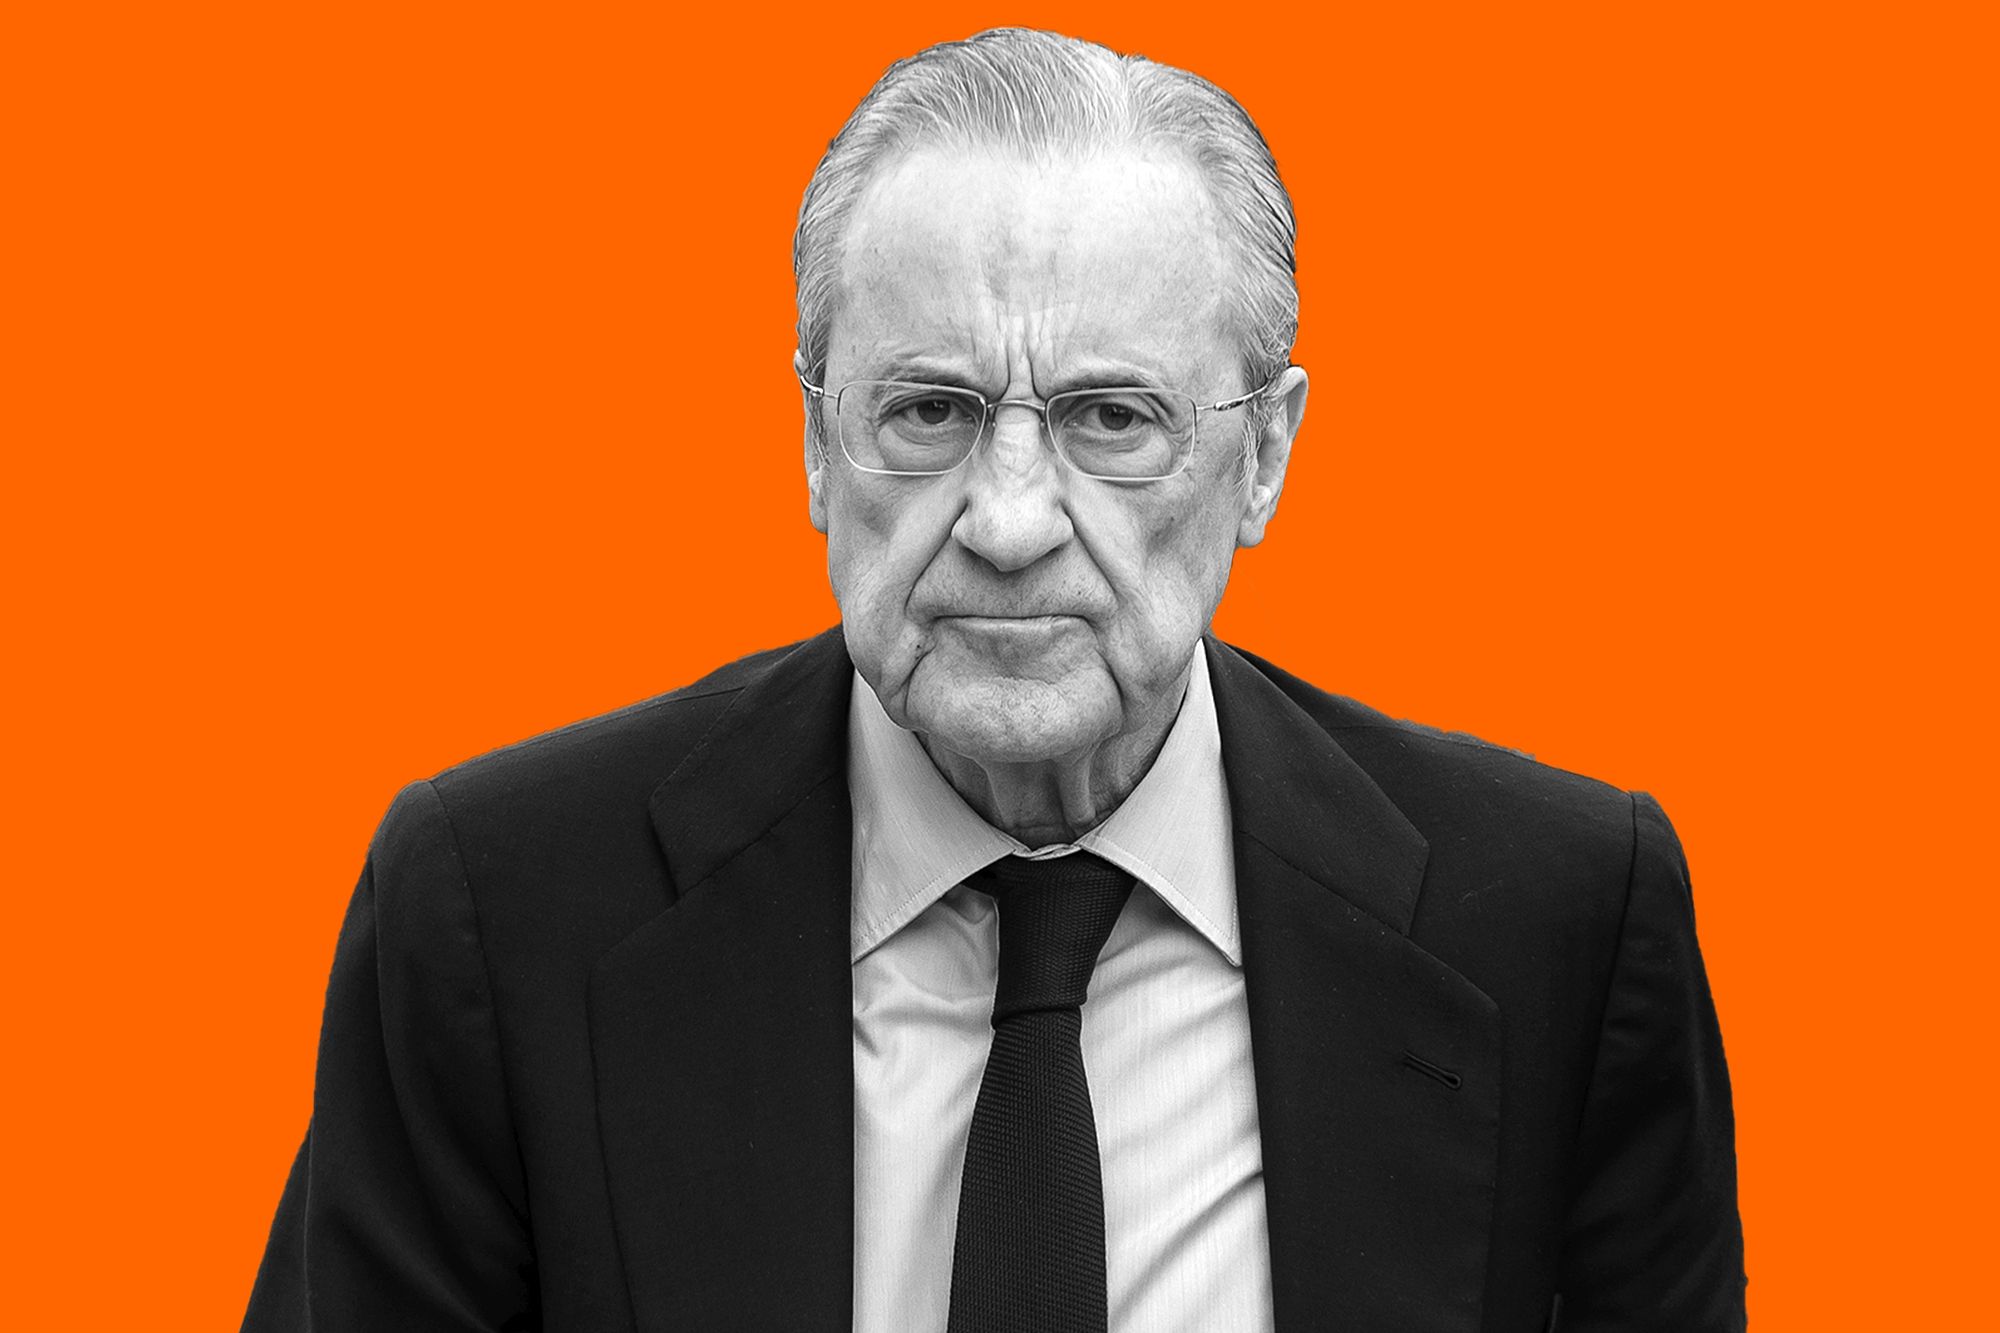 INFLUYENTE 65YMÁS: Economía. Florentino Pérez, el constructor líder que lleva más de 20 años al frente del Real Madrid